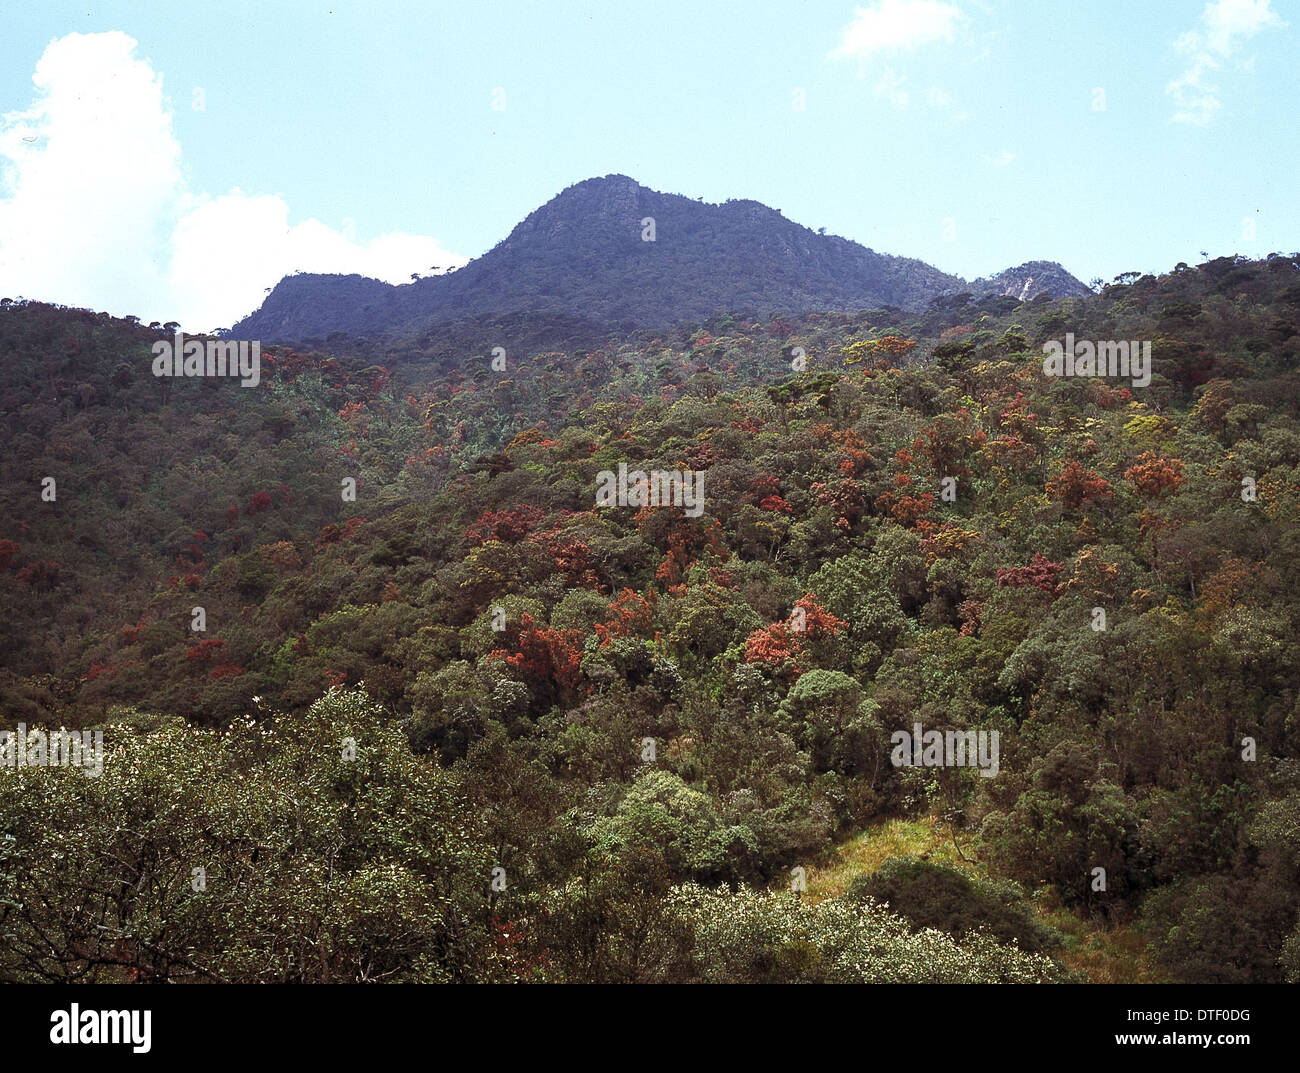 Montane rainforest, Sri Lanka Stock Photo